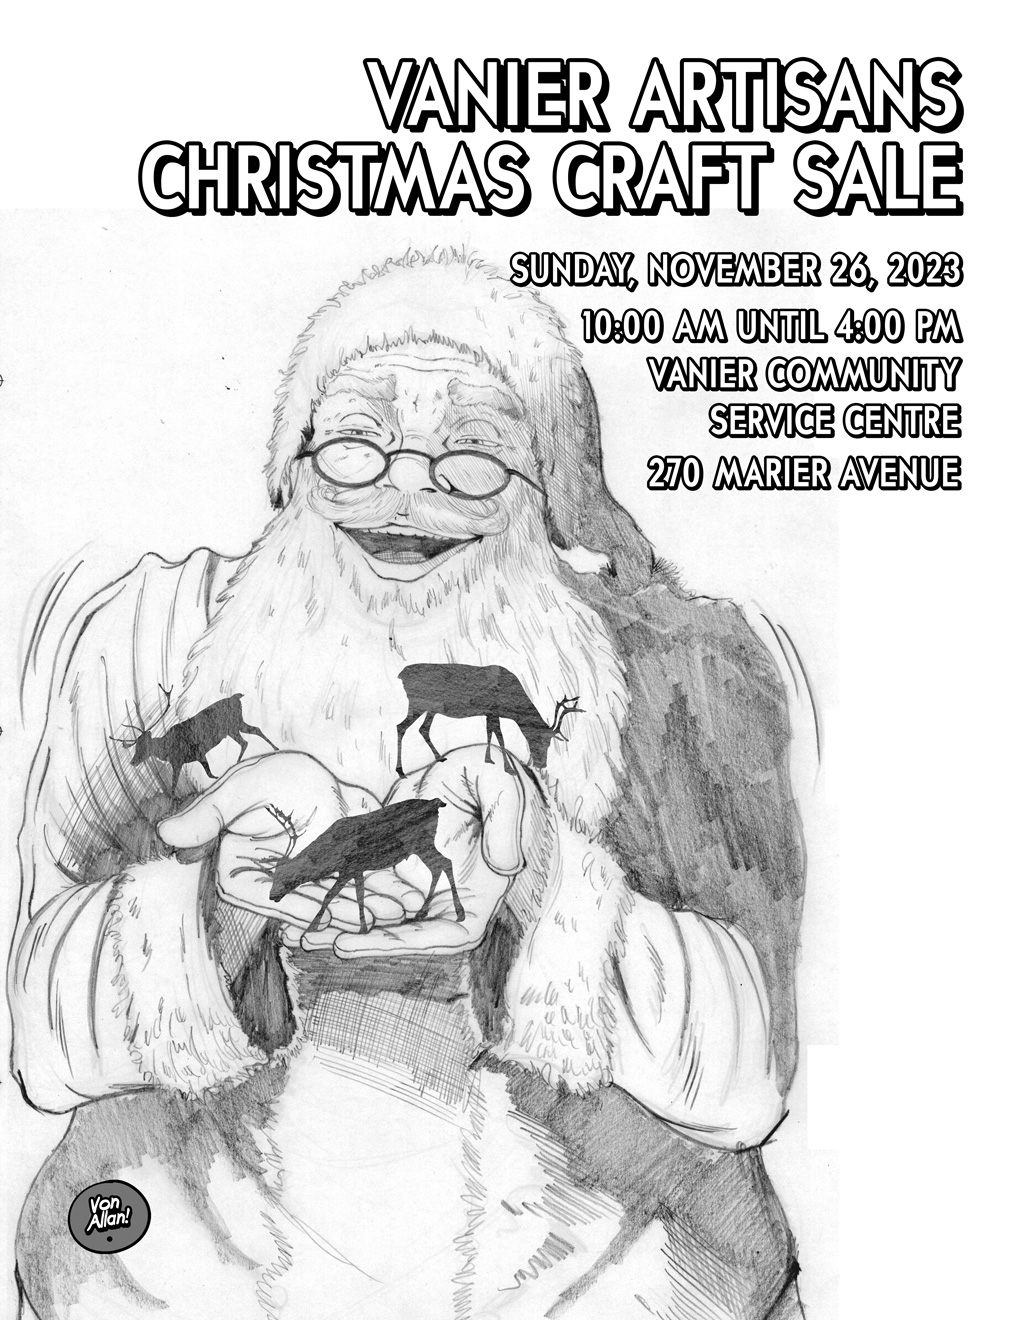 Pencil version of the Vanier Artisans 2023 Christmas Craft Sale Poster by Von Allan